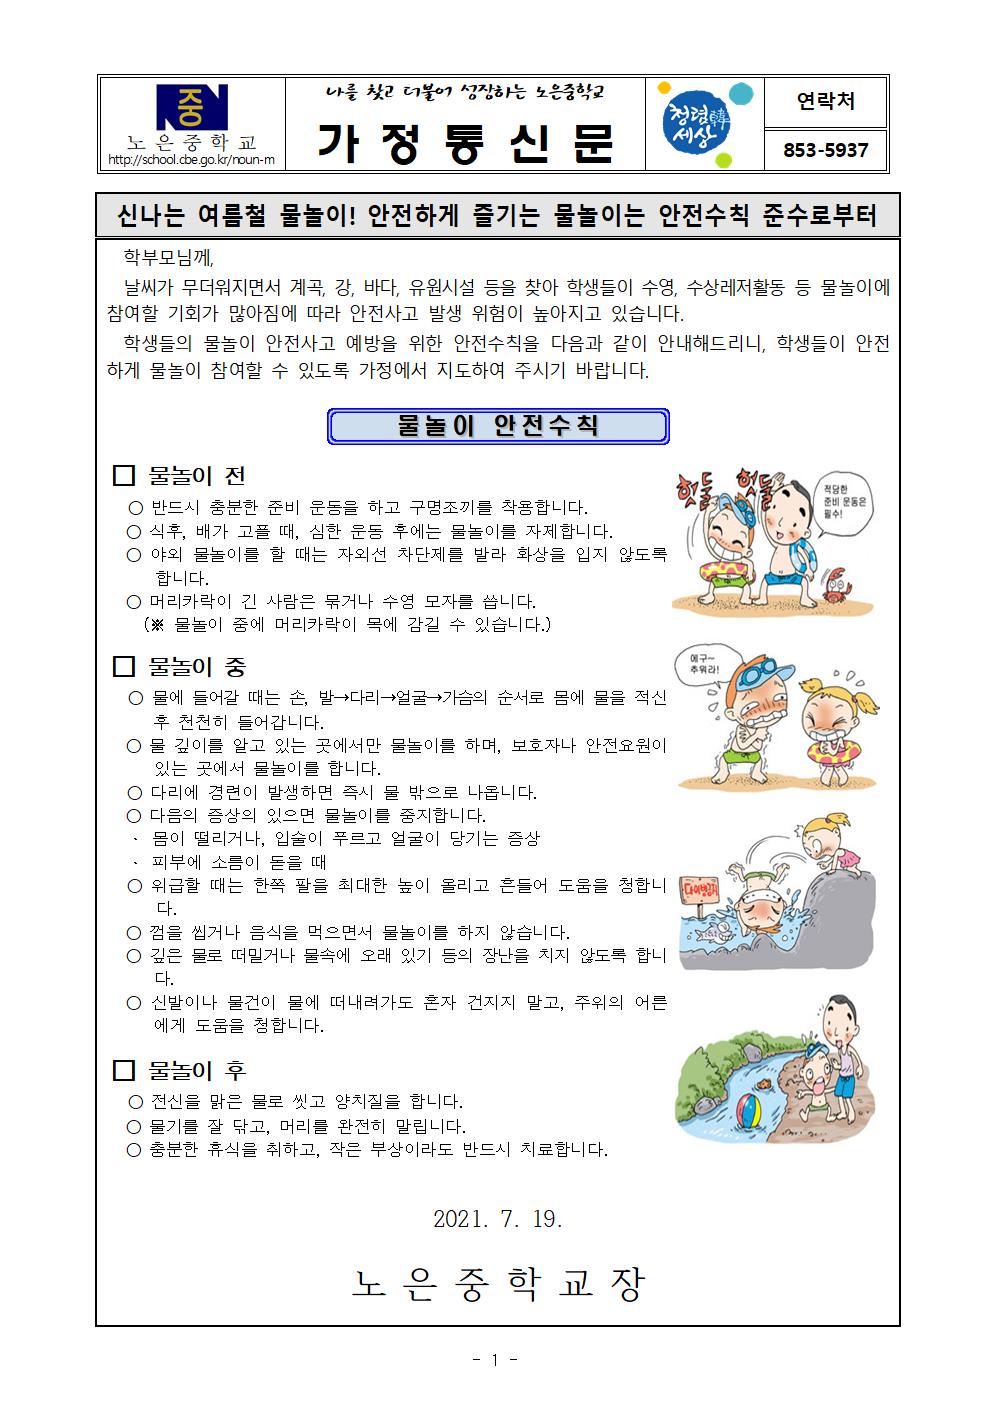 물놀이 안전사고 예방 가정통신문001